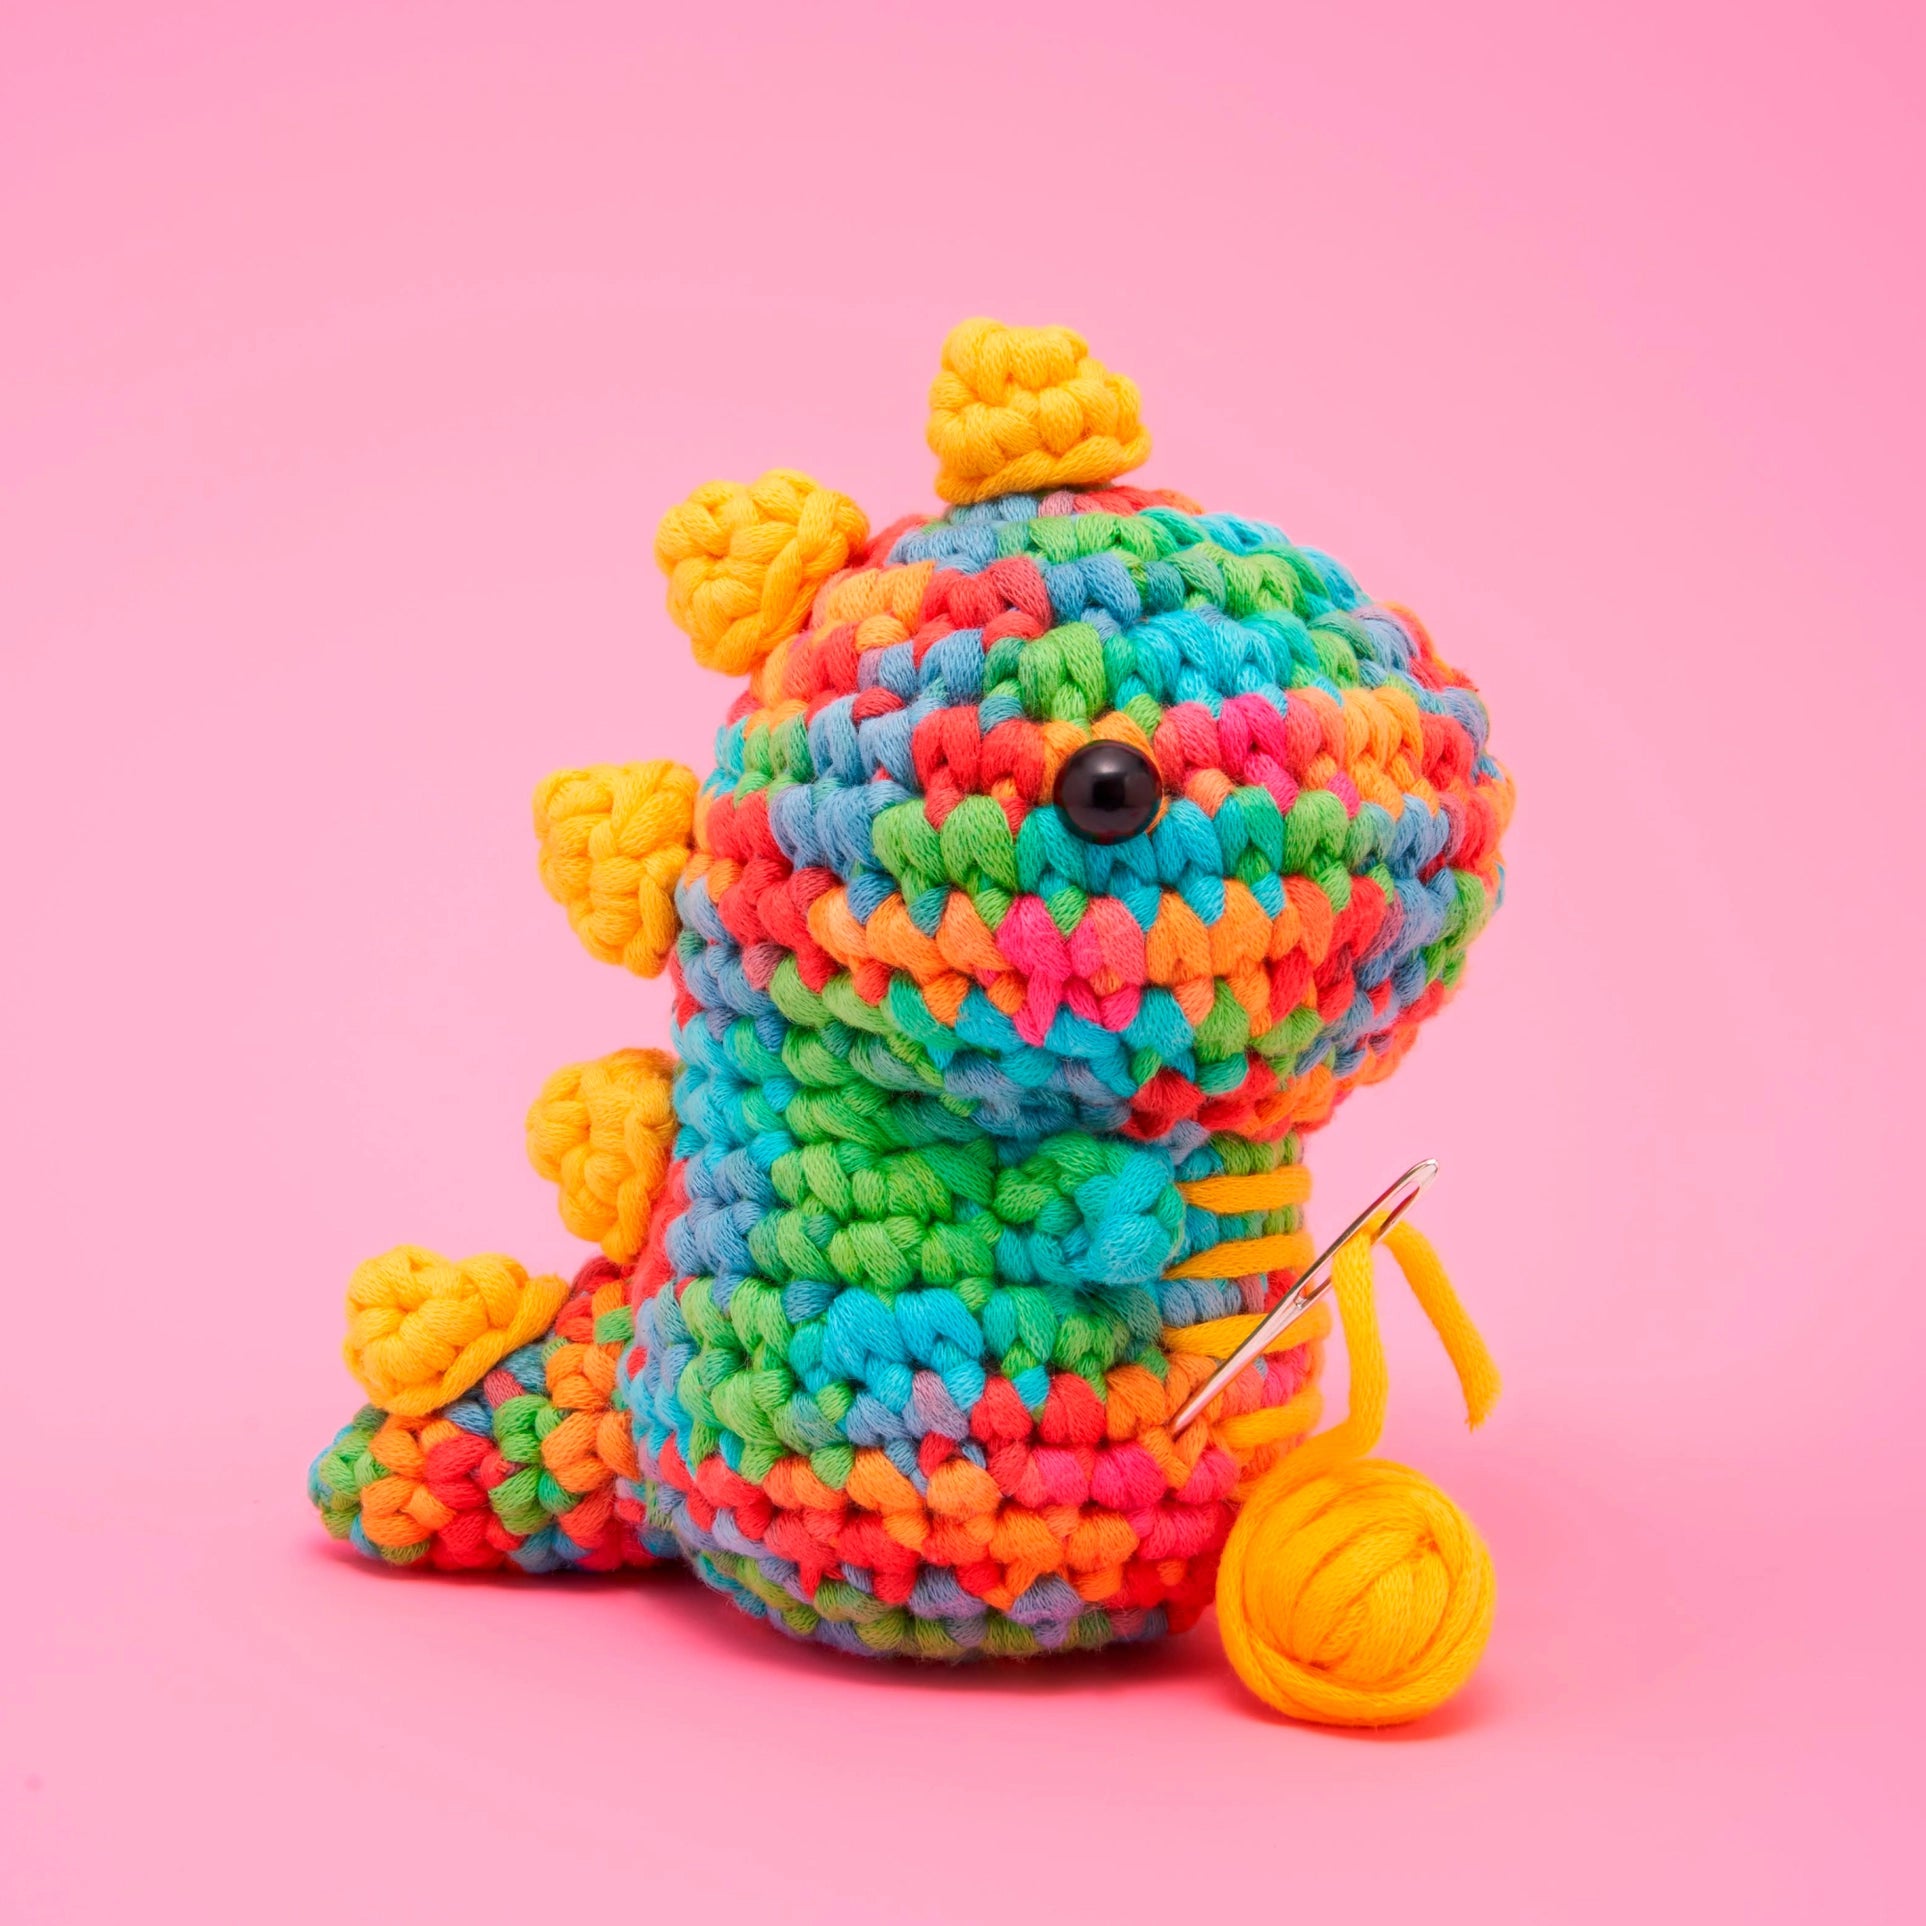 Beginners Crochet Kit